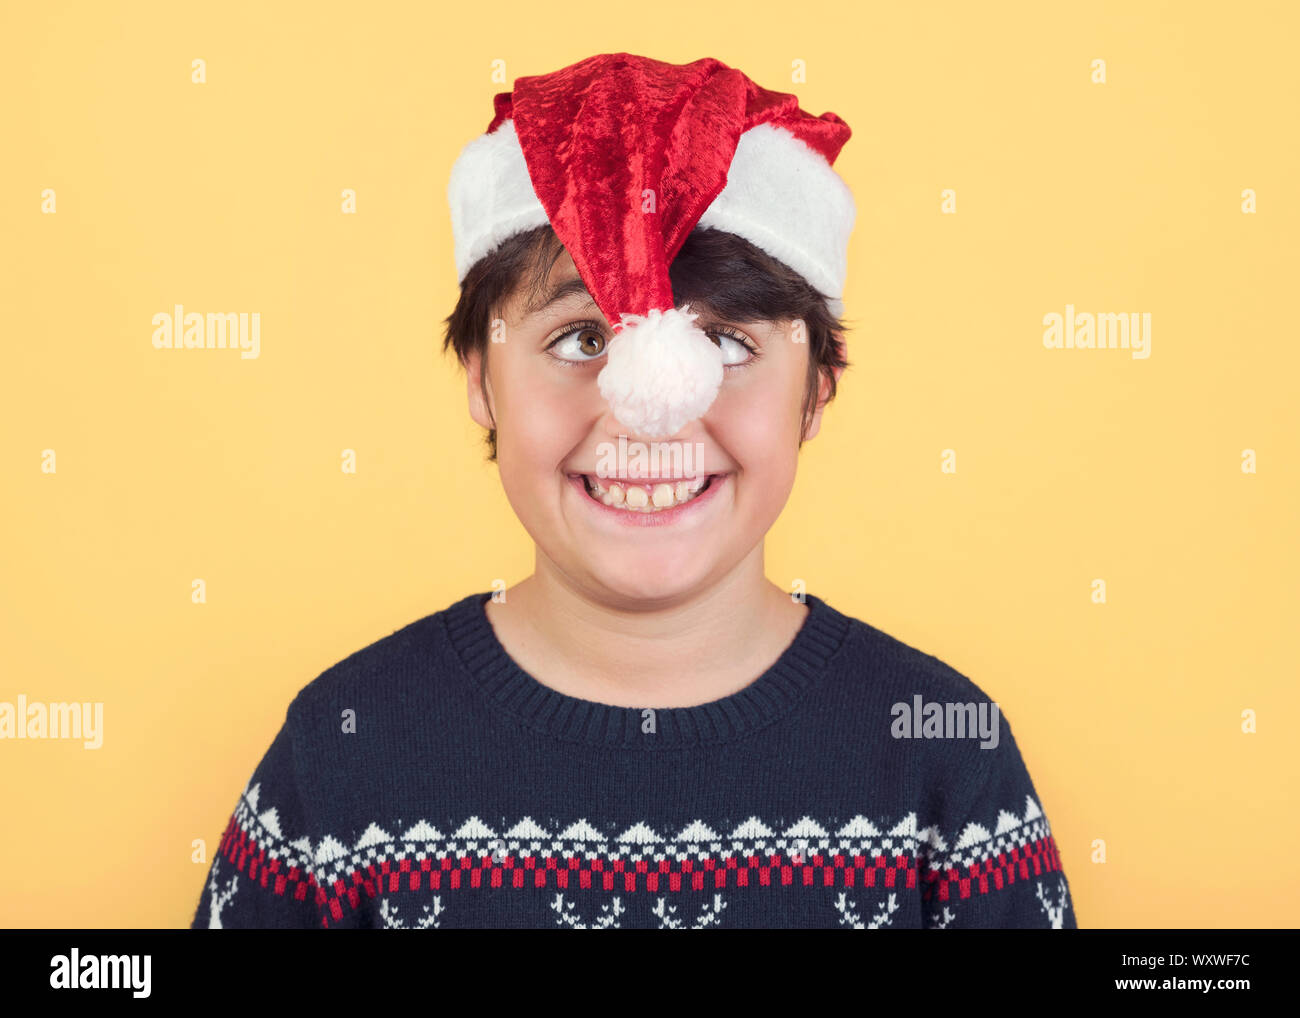 Enfant drôle Wearing Christmas Santa Claus Hat sur fond jaune Banque D'Images